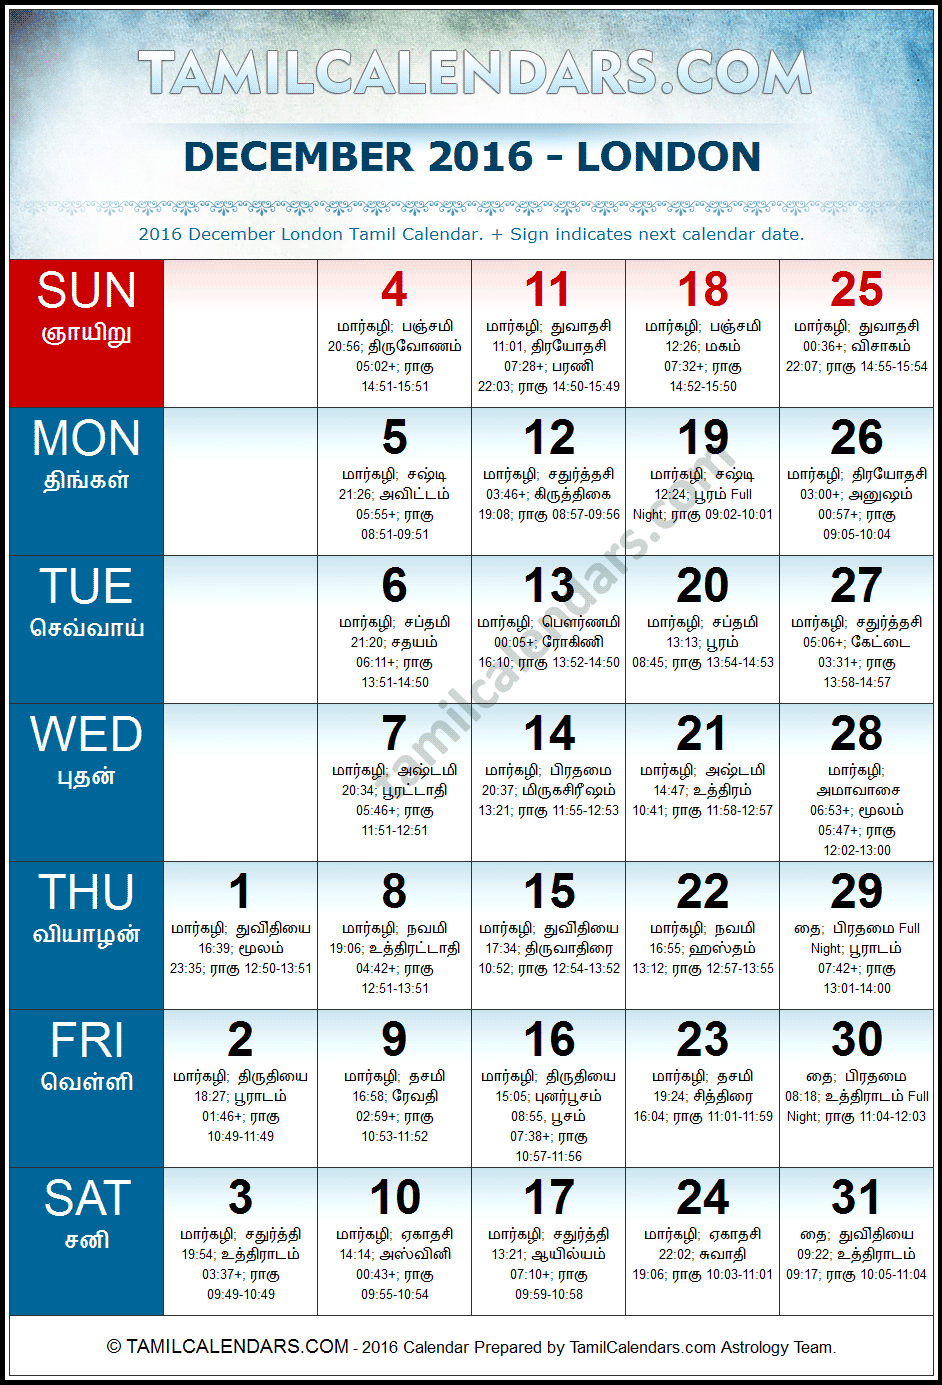 December 2016 London Tamil Calendar Download UK Tamil Calendars PDF